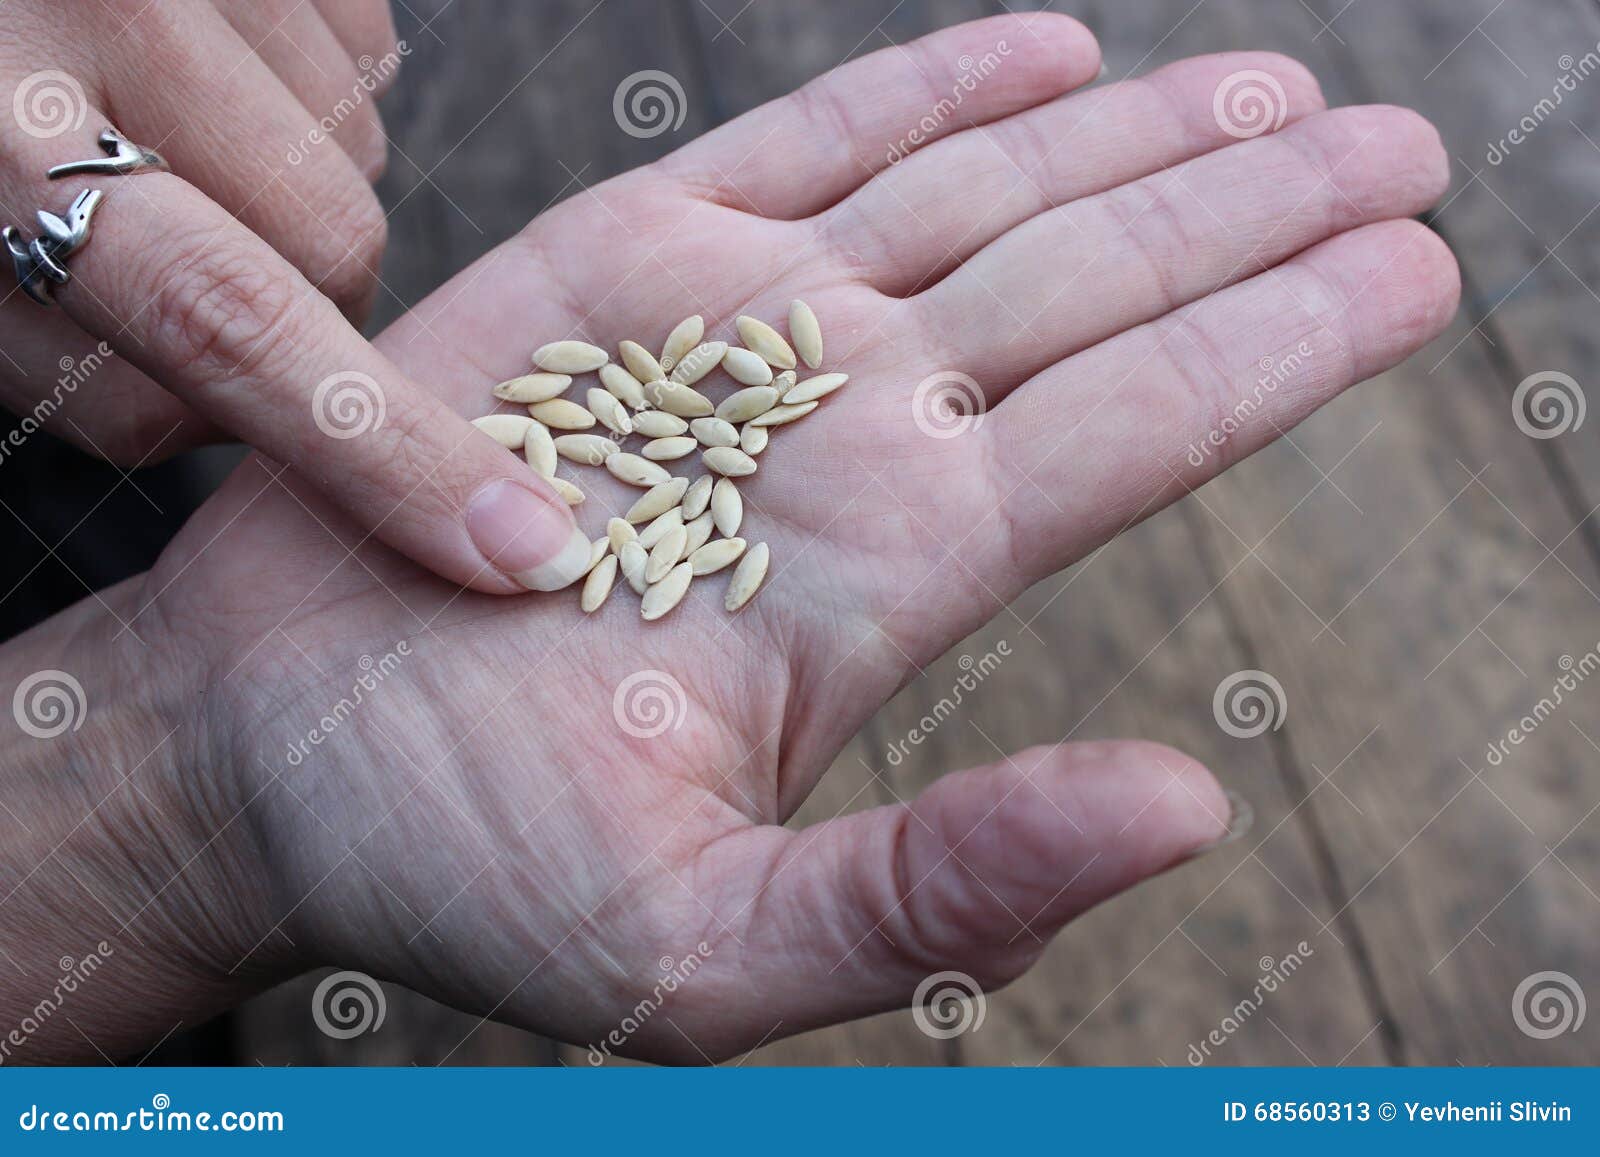 Огурцы сухими семенами. Семена. Семена огурцов на руке. Качественные семена. Некачественные семена.